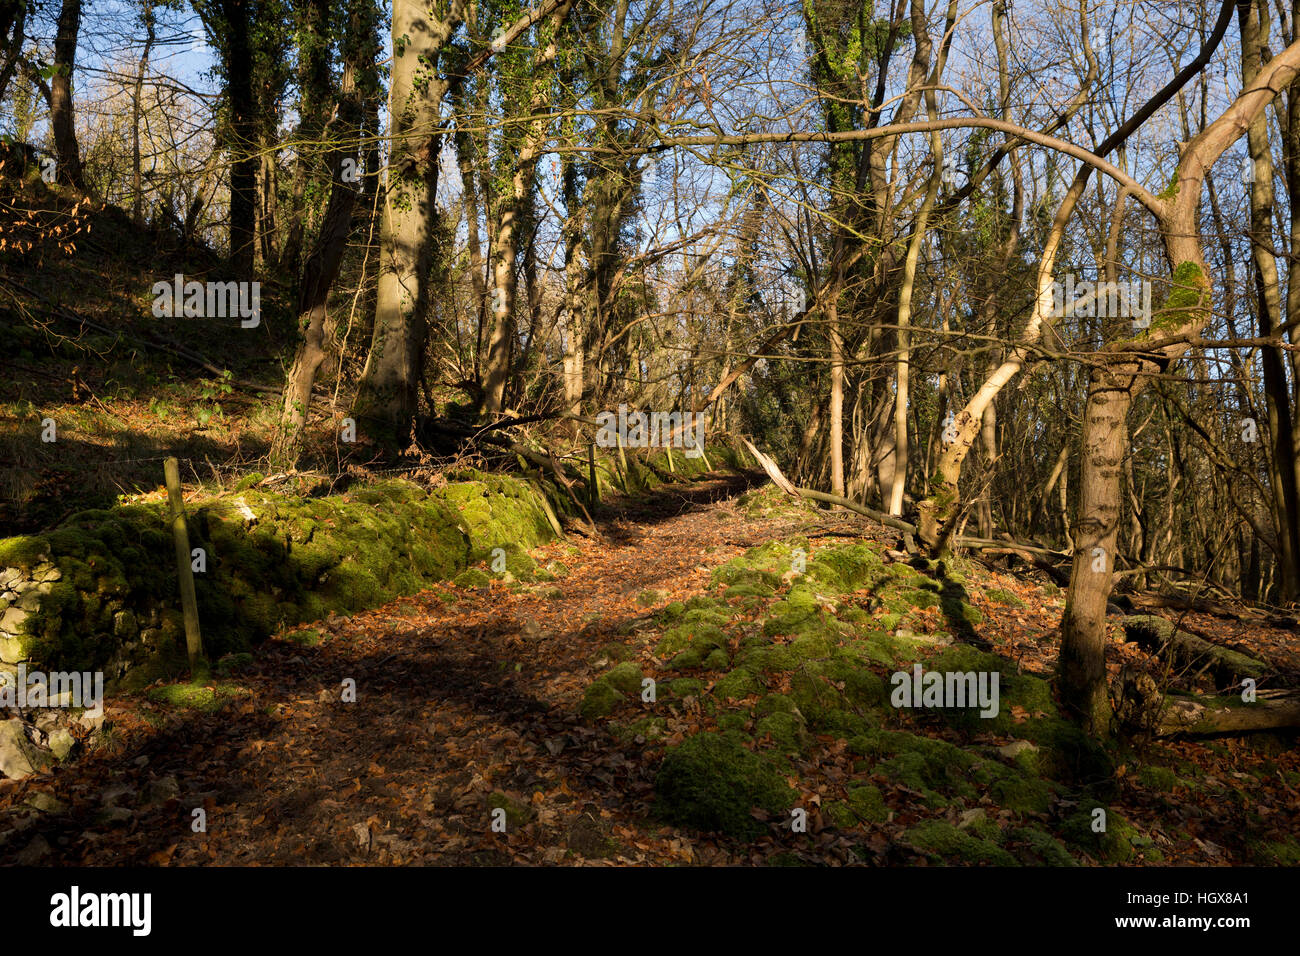 Regno Unito, Inghilterra, Derbyshire, Cressbrook Dale in inverno, parete di muschio accanto al percorso attraverso il bosco Foto Stock